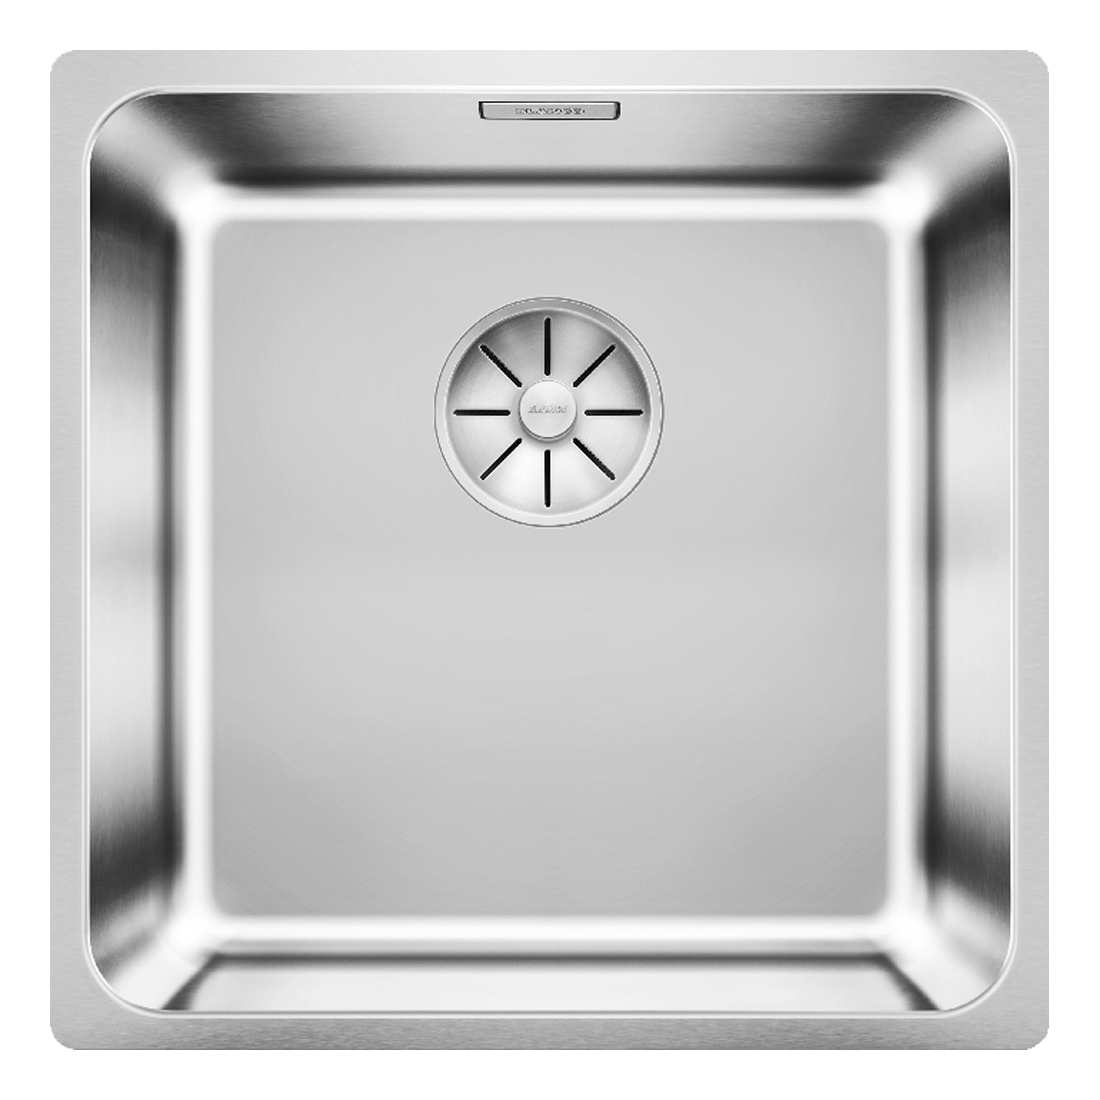 Кухонная мойка Blanco Solis 400-U полированная сталь кухонная мойка franke 122 0689 805 нержавеющая сталь